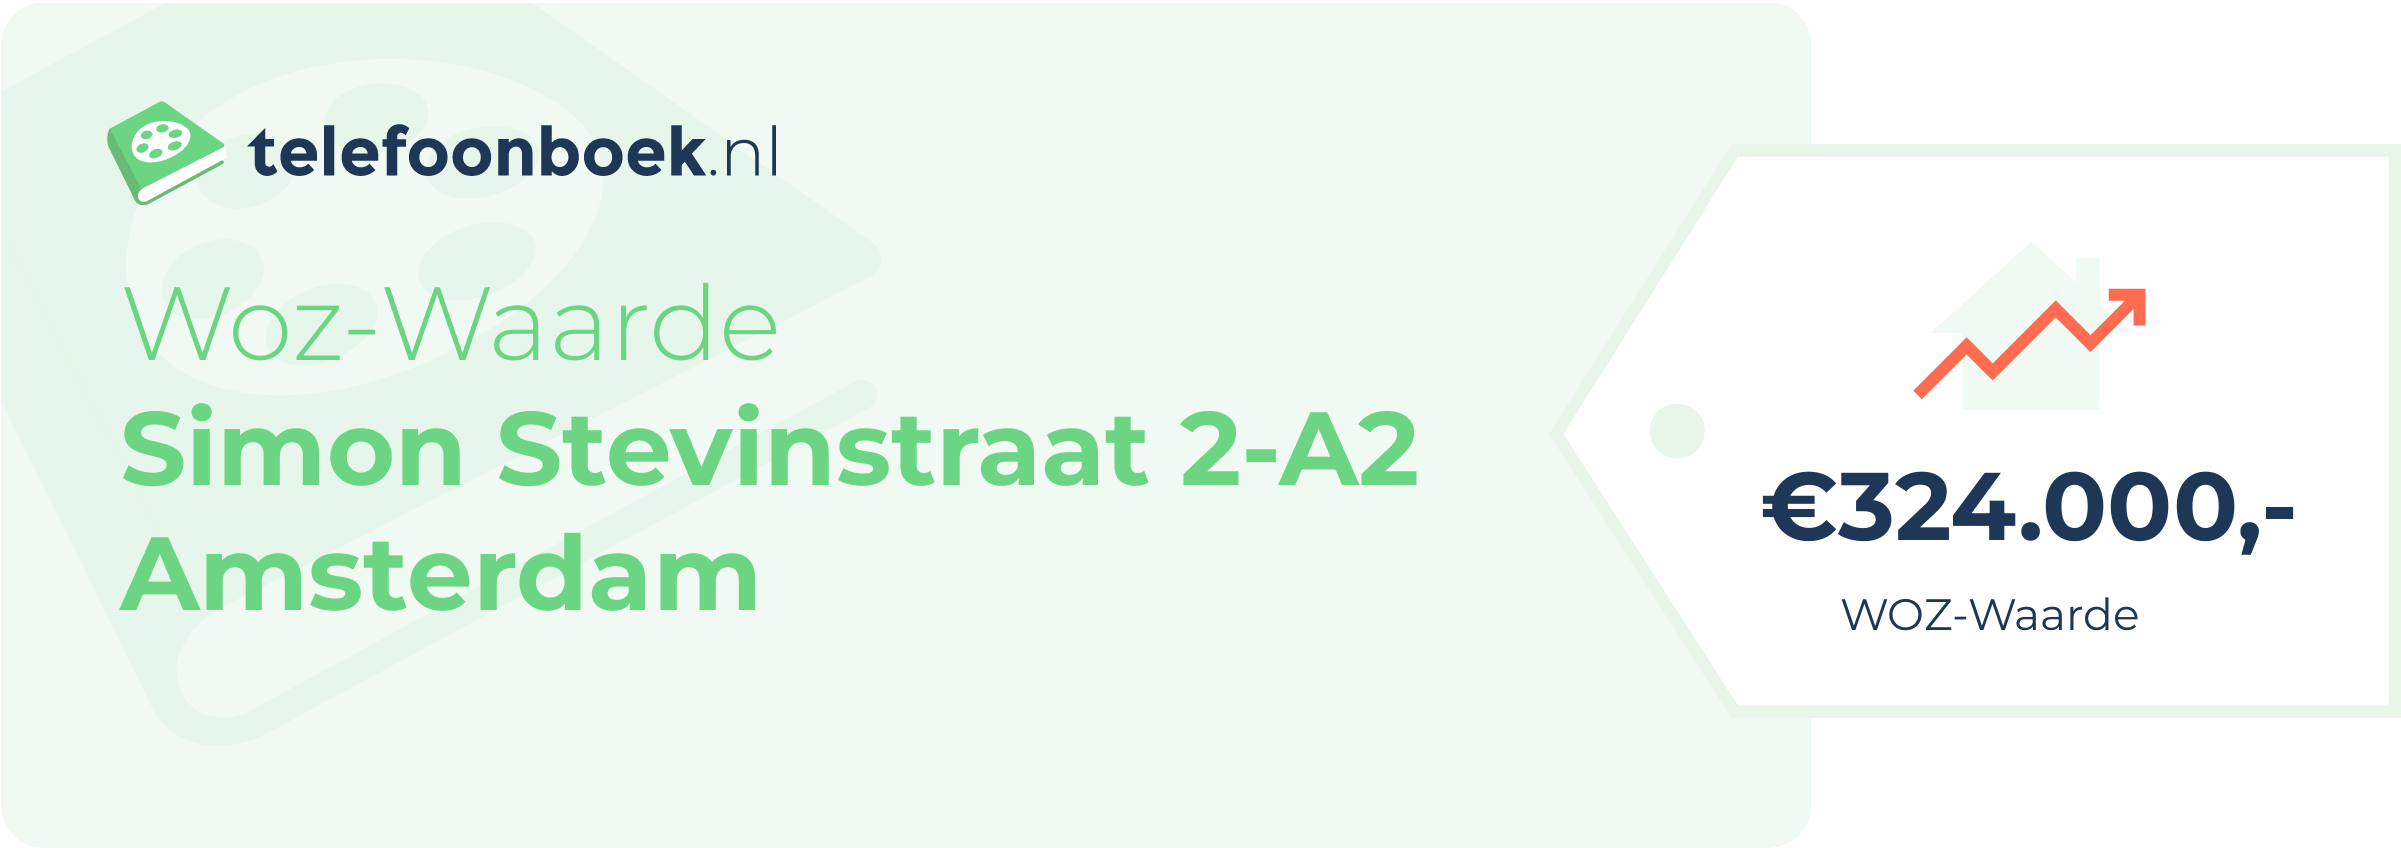 WOZ-waarde Simon Stevinstraat 2-A2 Amsterdam